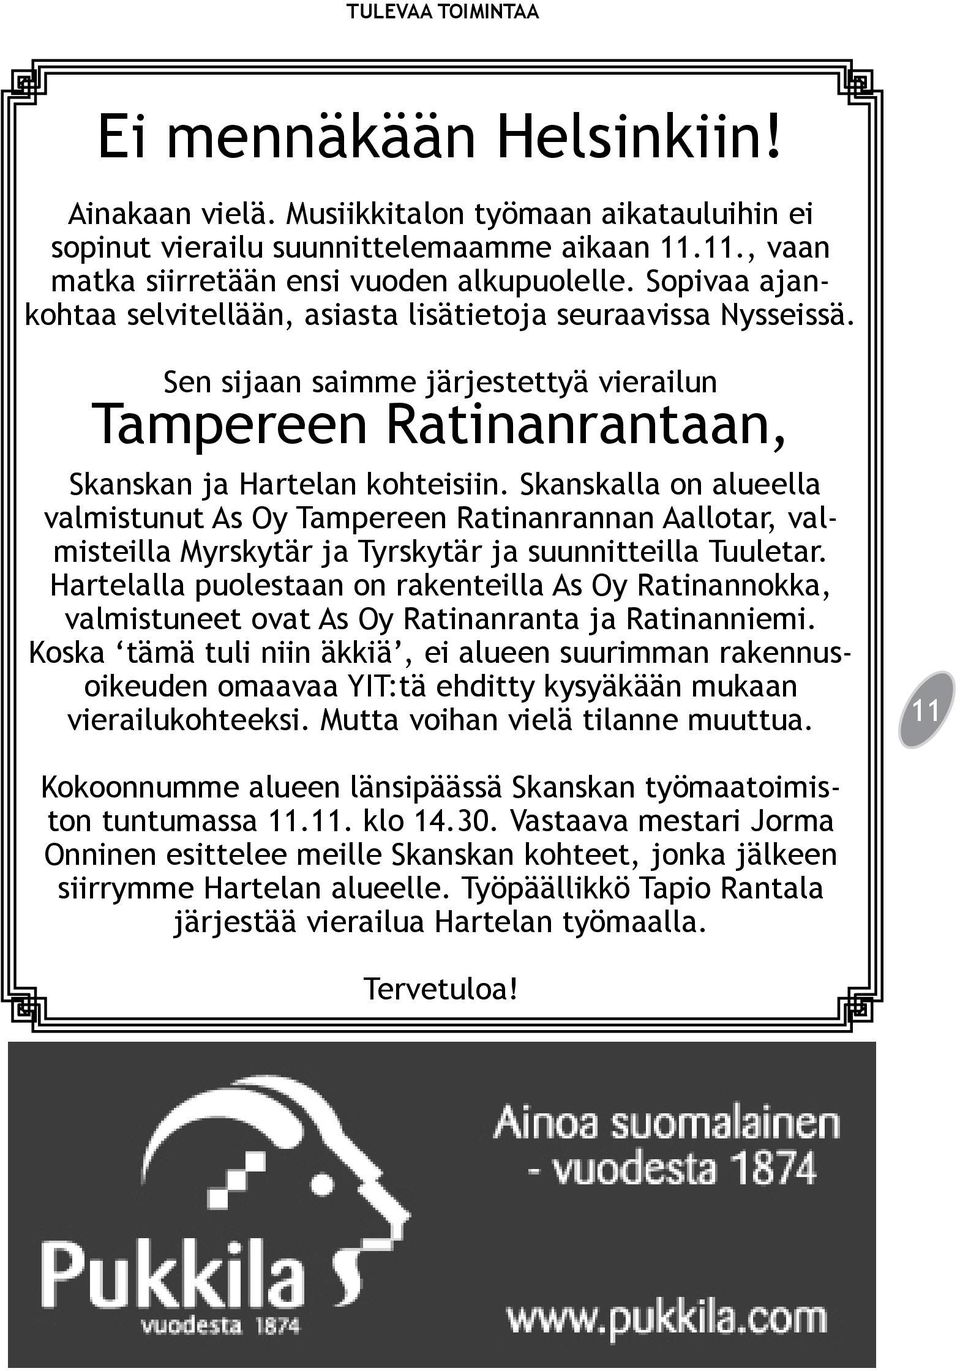 Skanskalla on alueella valmistunut As Oy Tampereen Ratinanrannan Aallotar, valmisteilla Myrskytär ja Tyrskytär ja suunnitteilla Tuuletar.